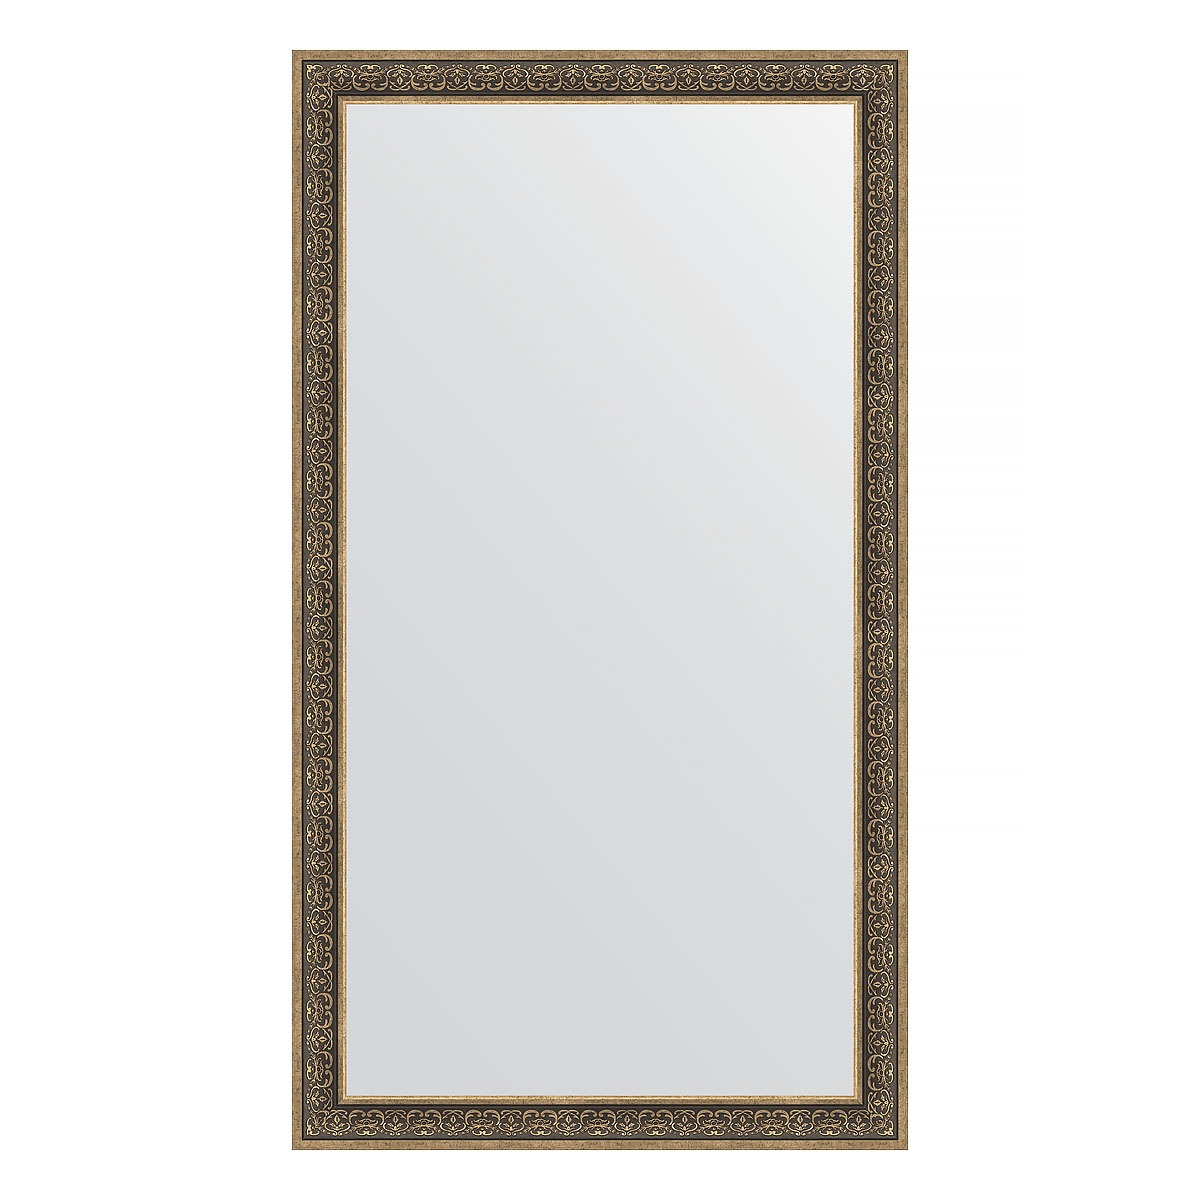 Зеркало напольное в багетной раме Evoform вензель серебряный 101 мм 114x204 см зеркало напольное с фацетом в багетной раме вензель серебряный 101 мм 114x204 см